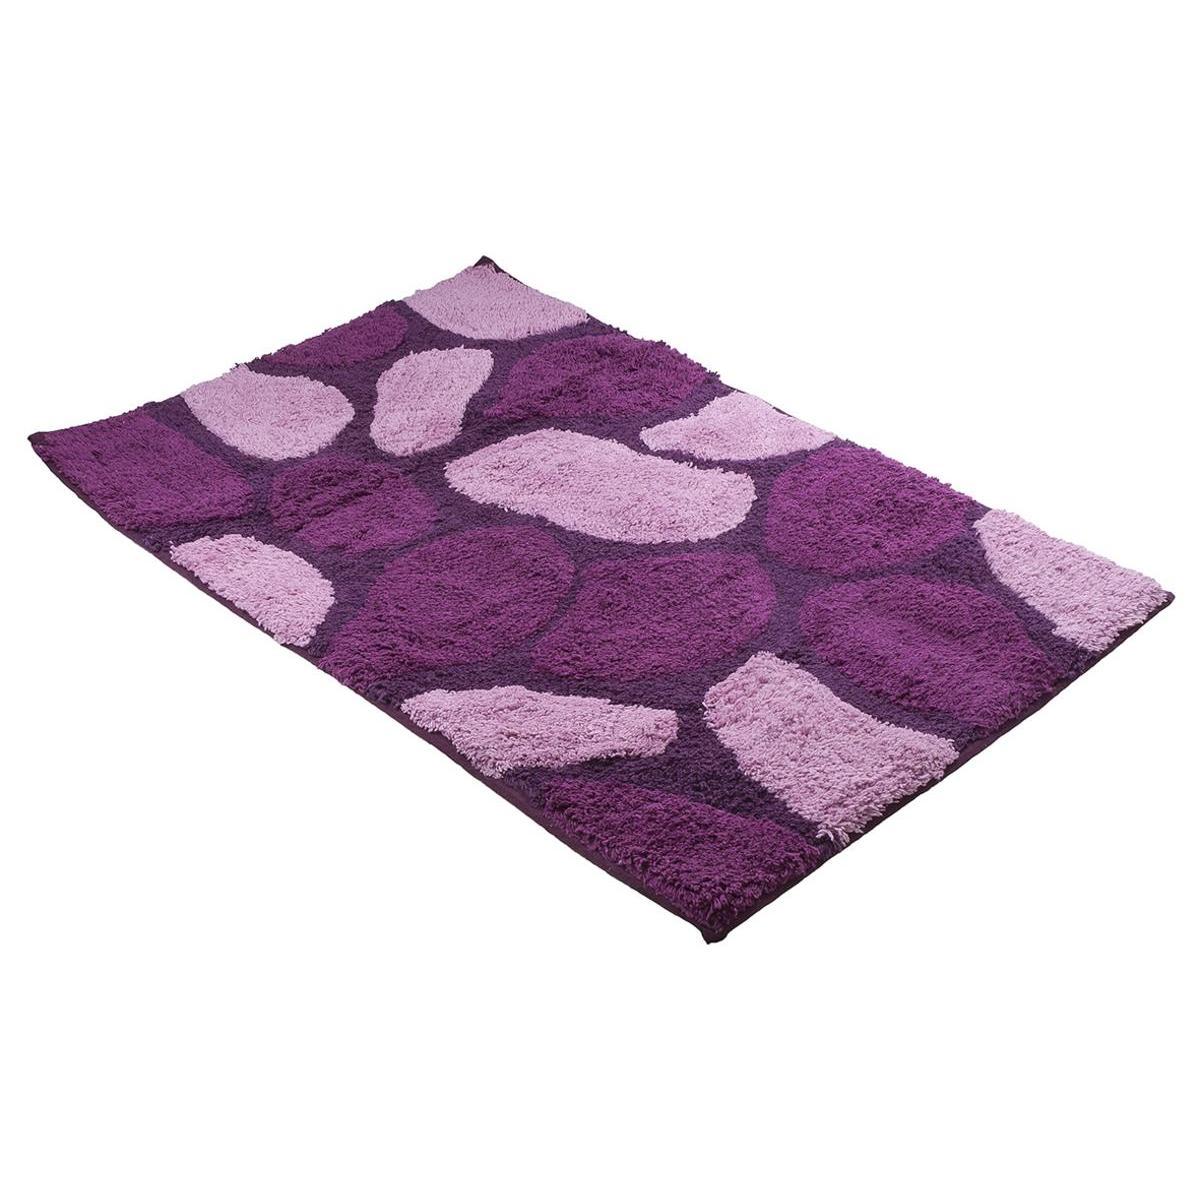 Tapis de bains galets - L 81 x l 48.5 cm - Violet